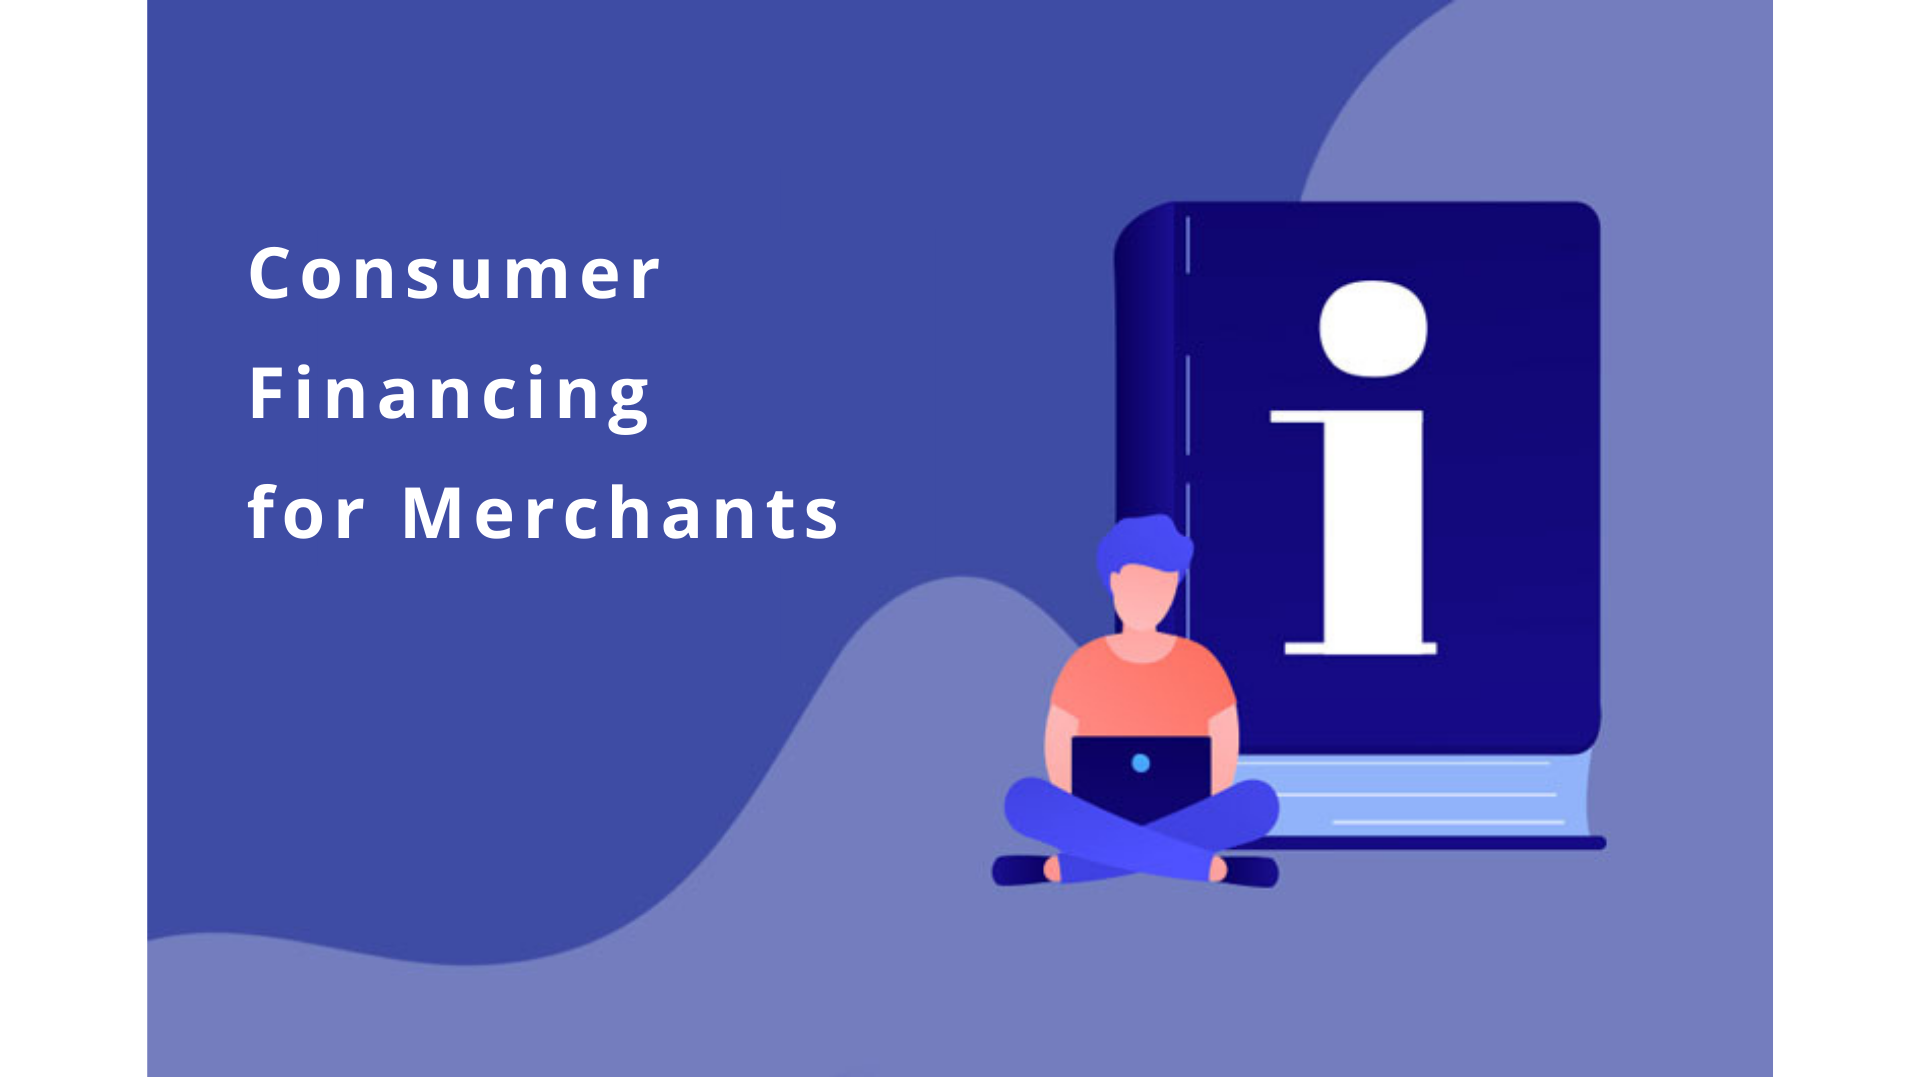 Benefits of Consumer Financing for Merchants